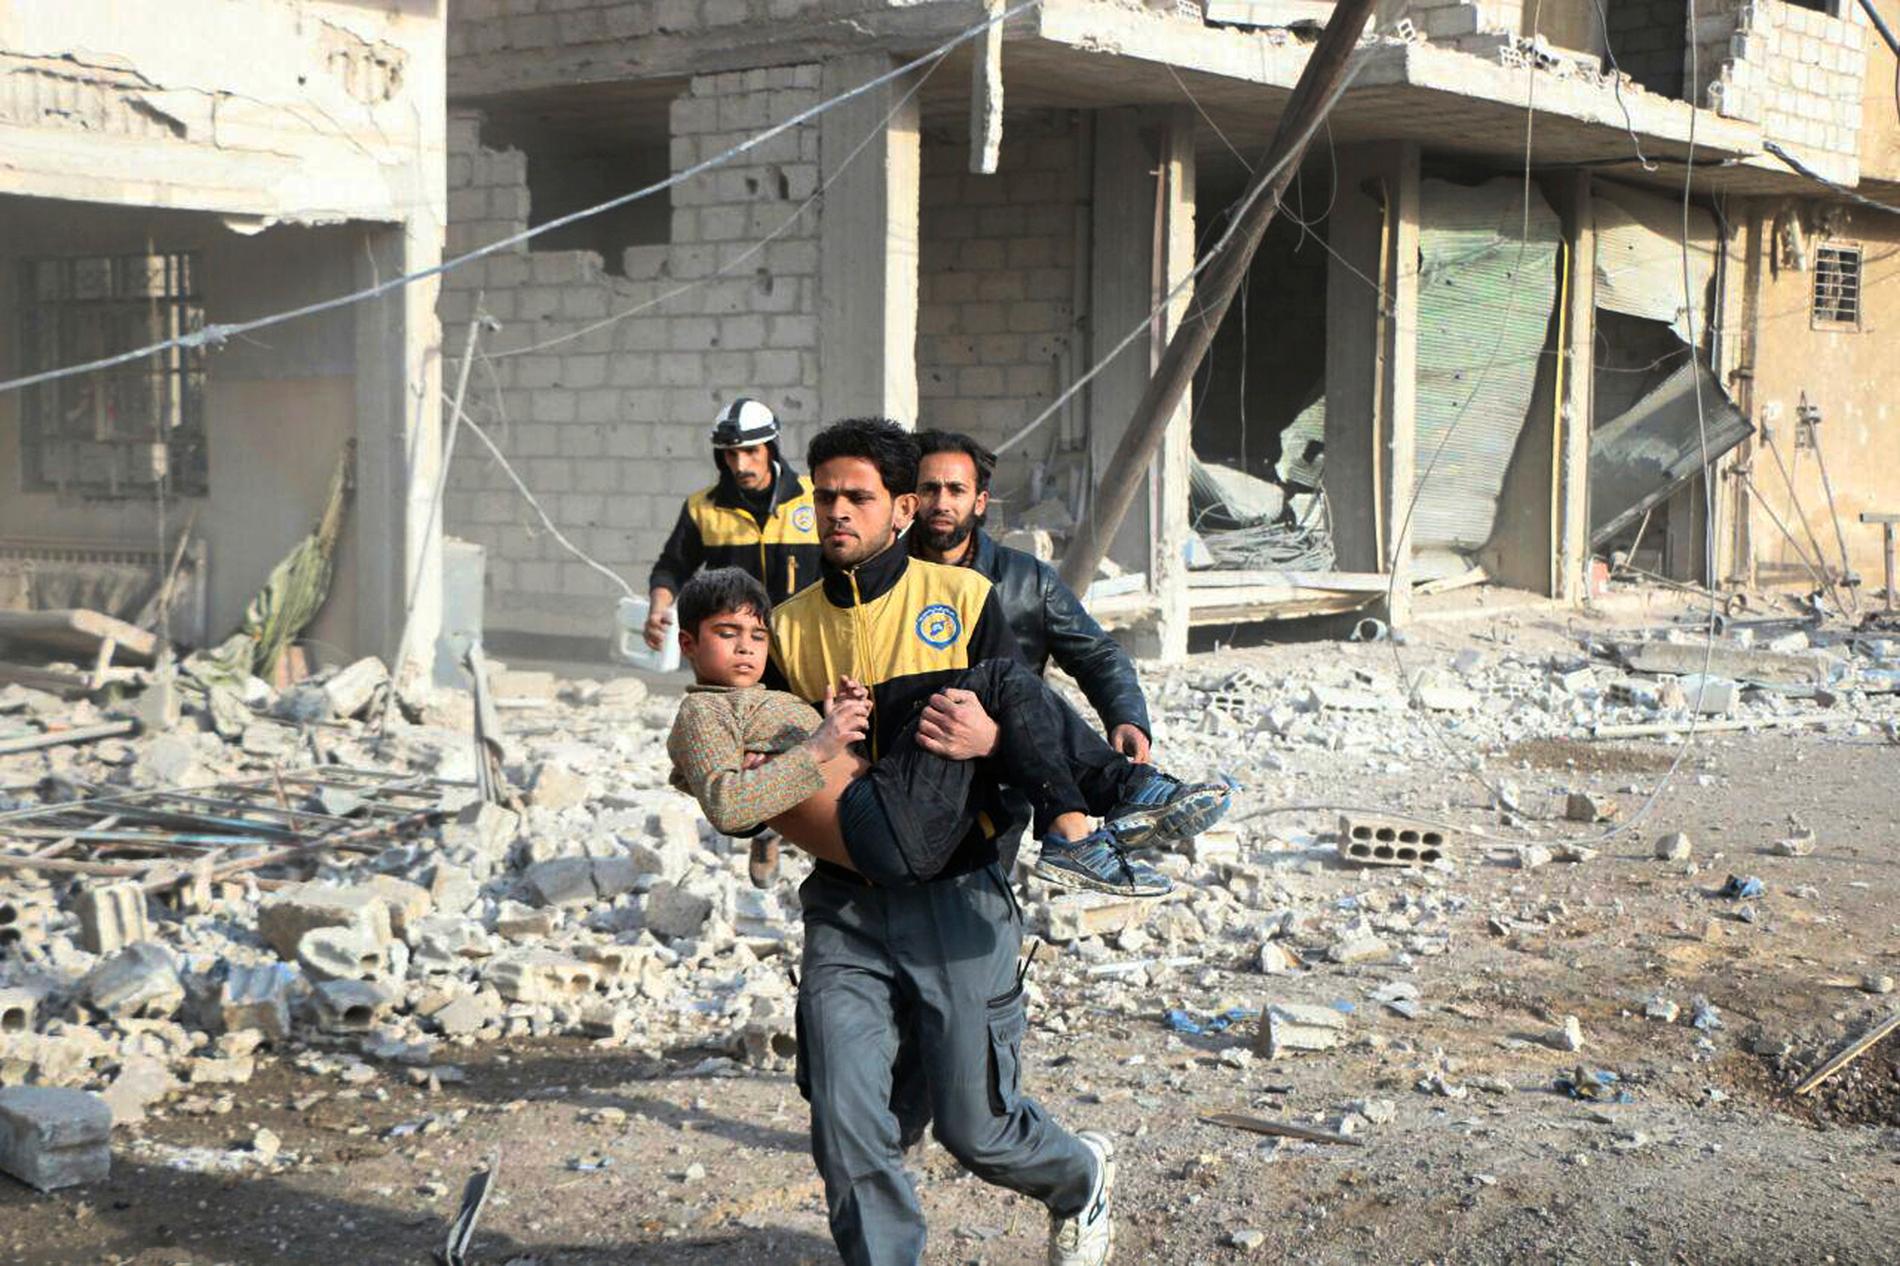 En medlem av den syriska civilförsvarsorganisationen Vita hjälmarna bär en skadad pojke som de räddat under ett flyganfall i östra Ghouta.